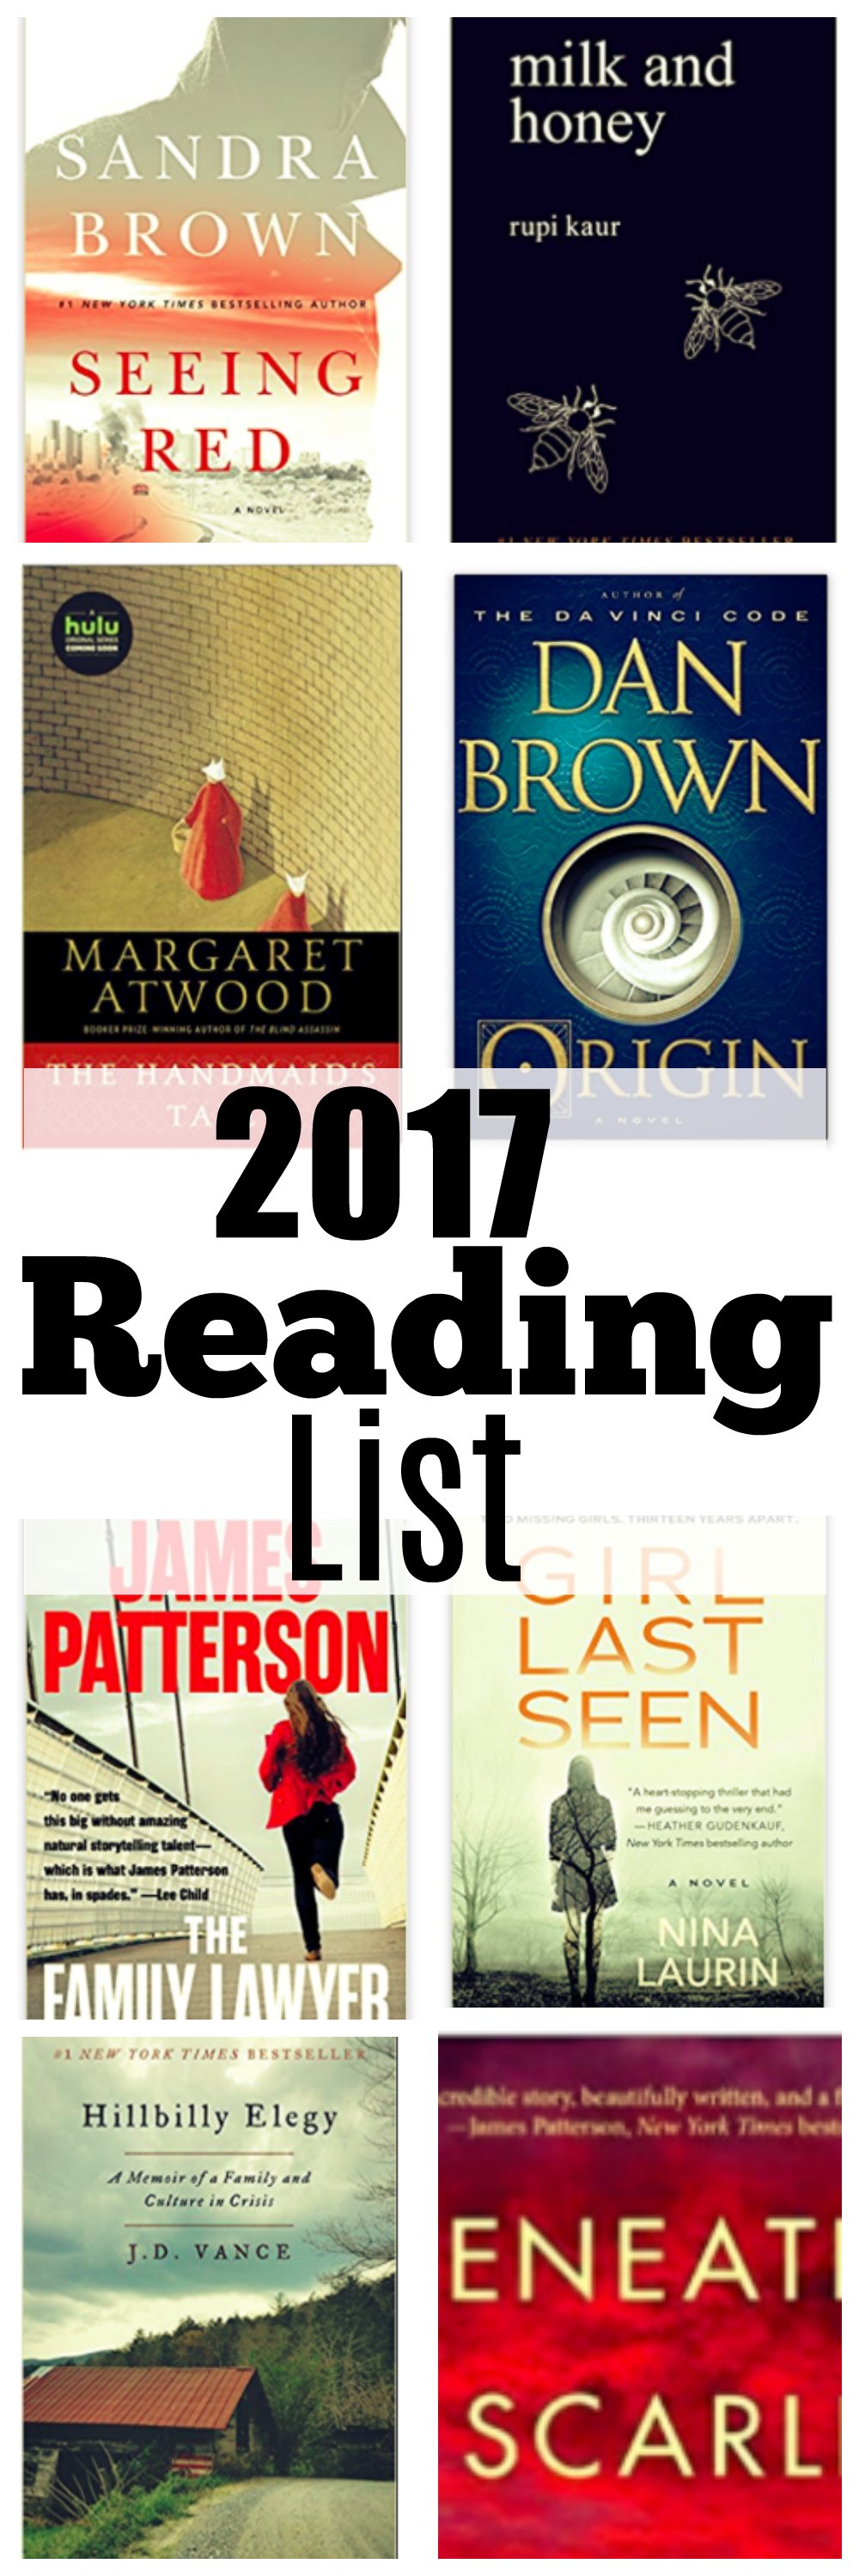 2017 Reading List - Fiction by Atlanta mom blogger Happily Hughes